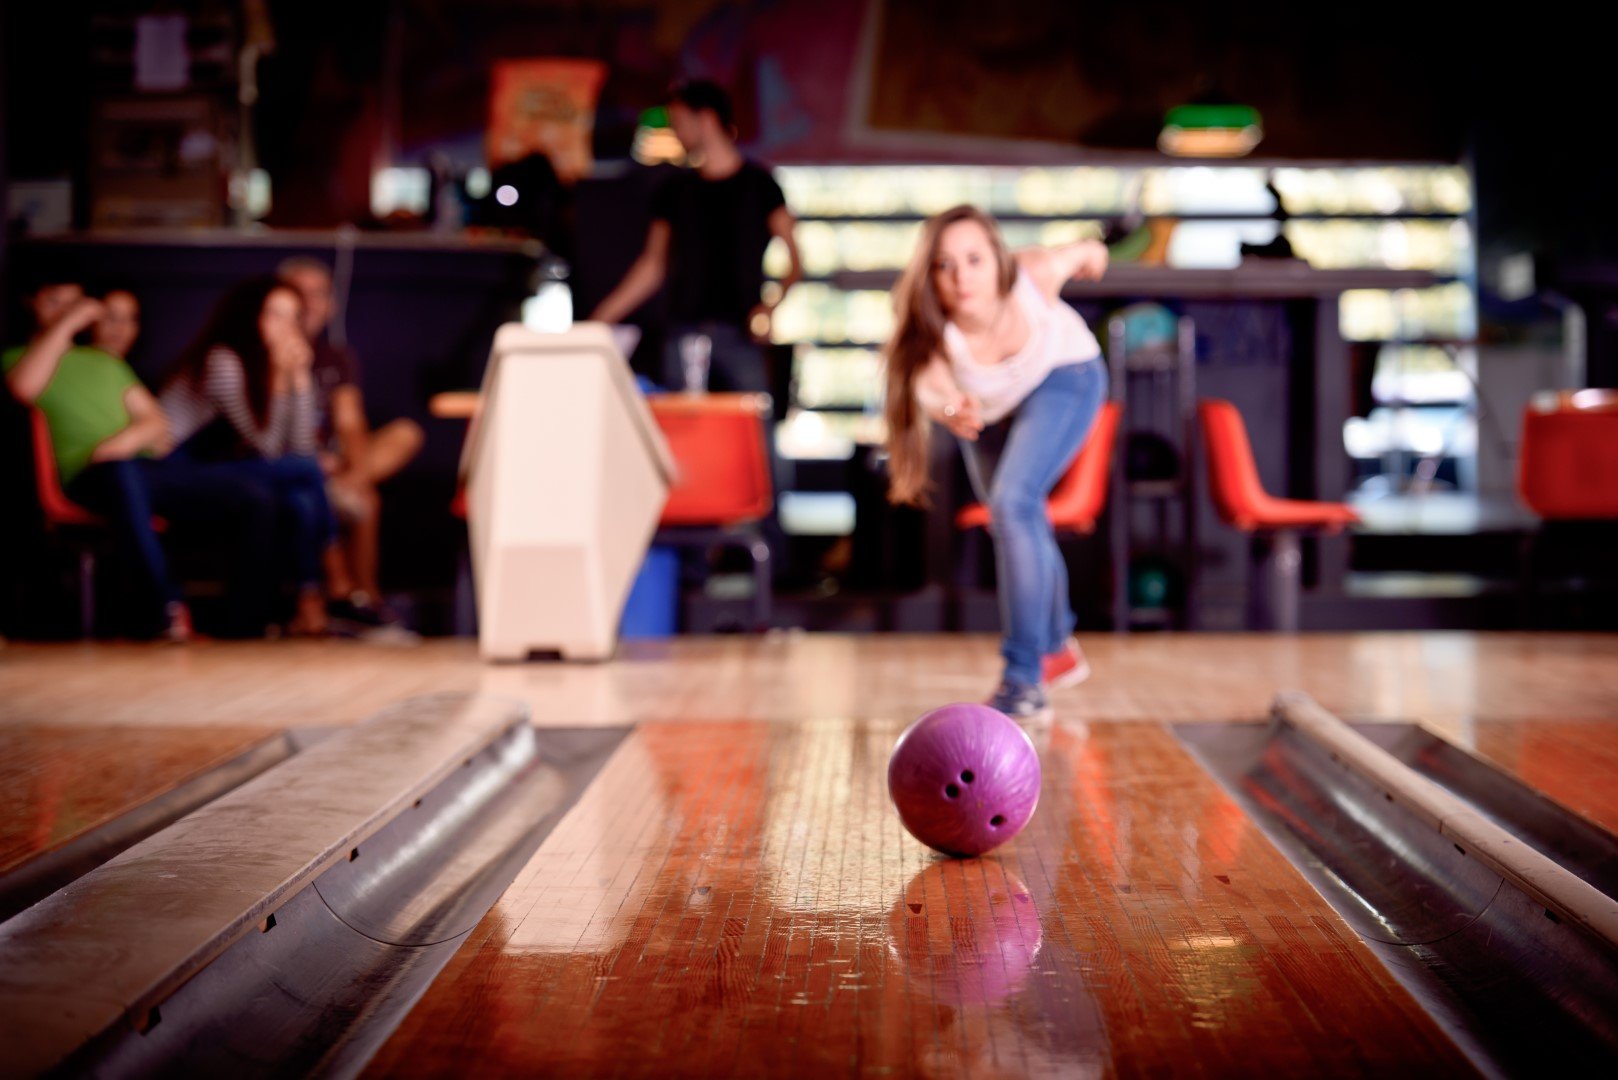 Gutter Balls & Kingpins Bowling Trivia